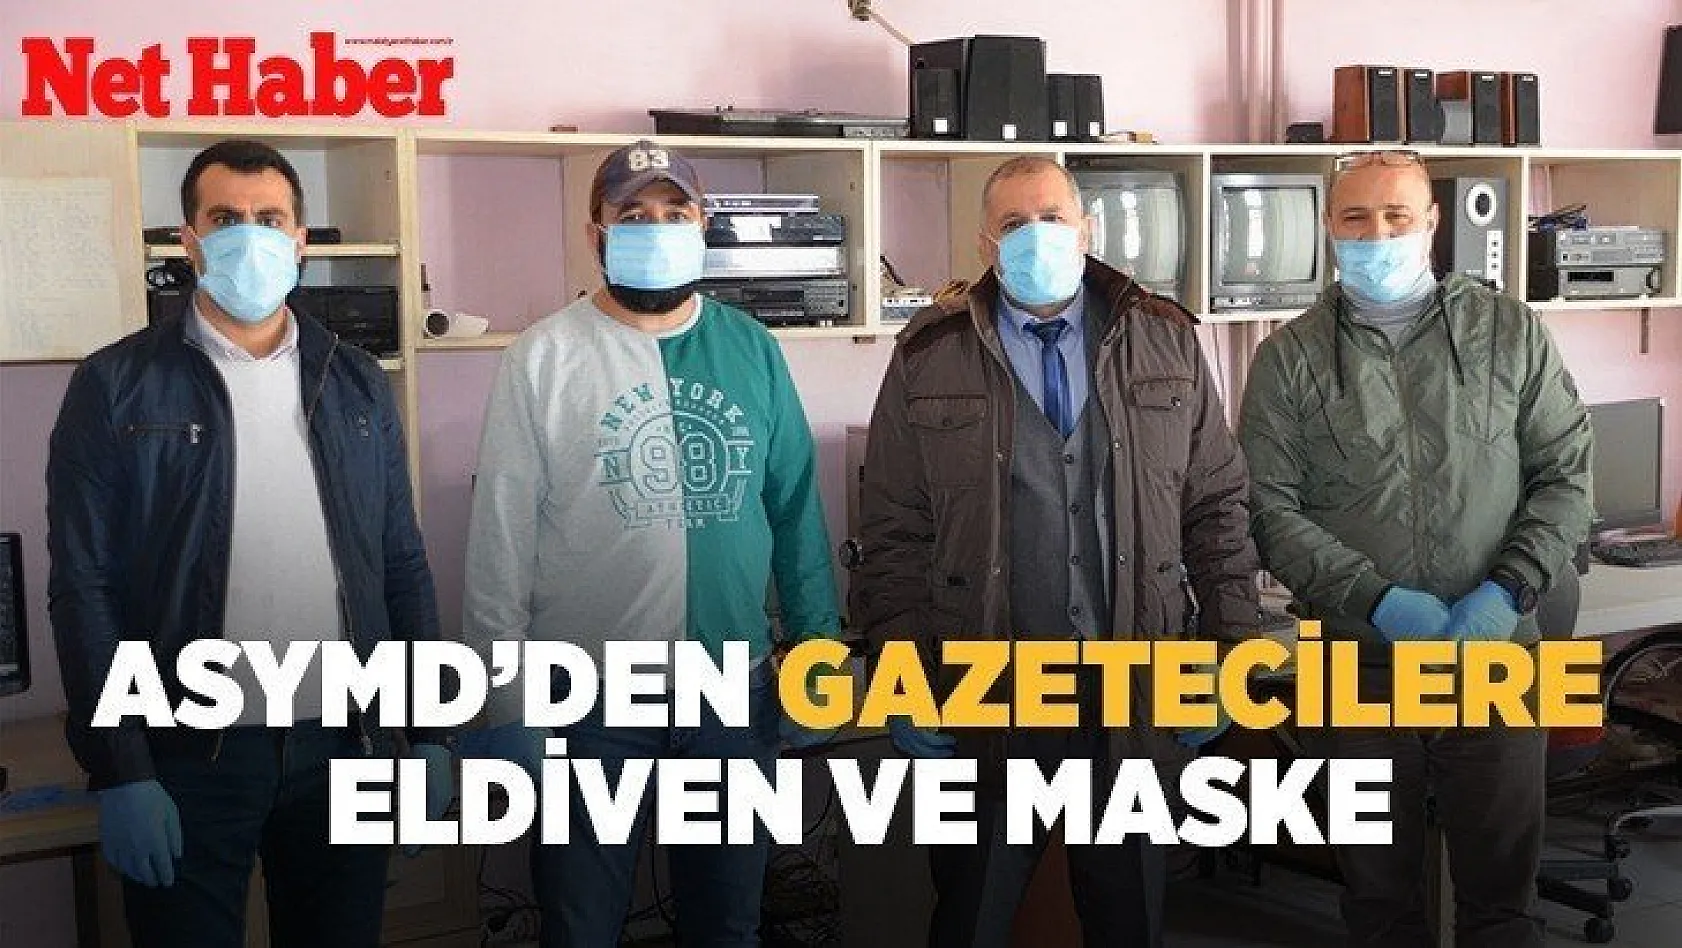 ASYMD'den gazetecilere eldiven ve maske